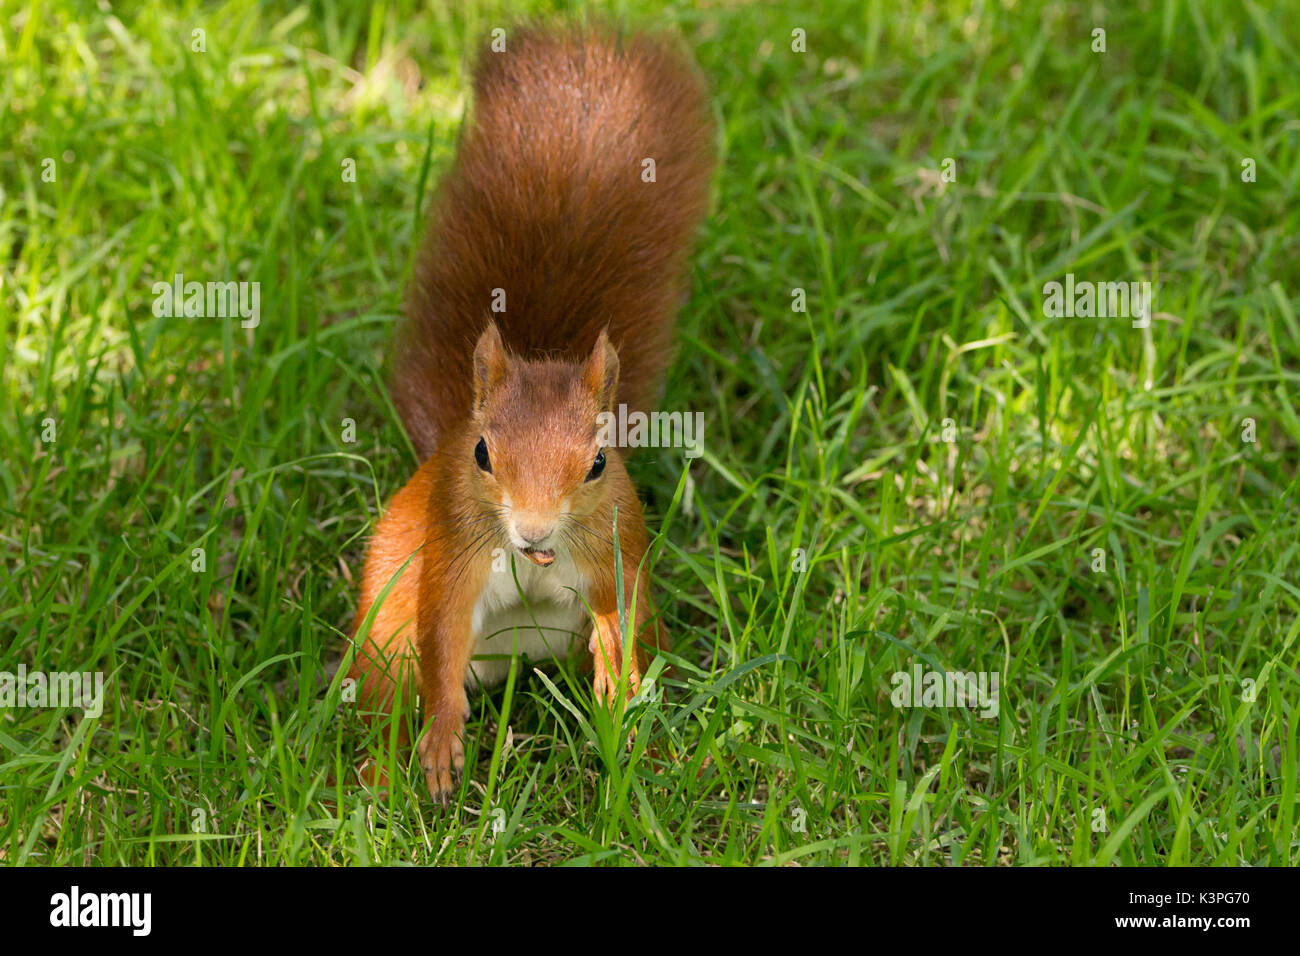 L'écureuil roux Sciurus vulgaris espèce autochtone en Grande-Bretagne et l'Irlande avec fourrure orange rouge grande queue rouge buissonnante. A l'aide d'un écrou dans sa bouche sur une banque d'herbe. Banque D'Images